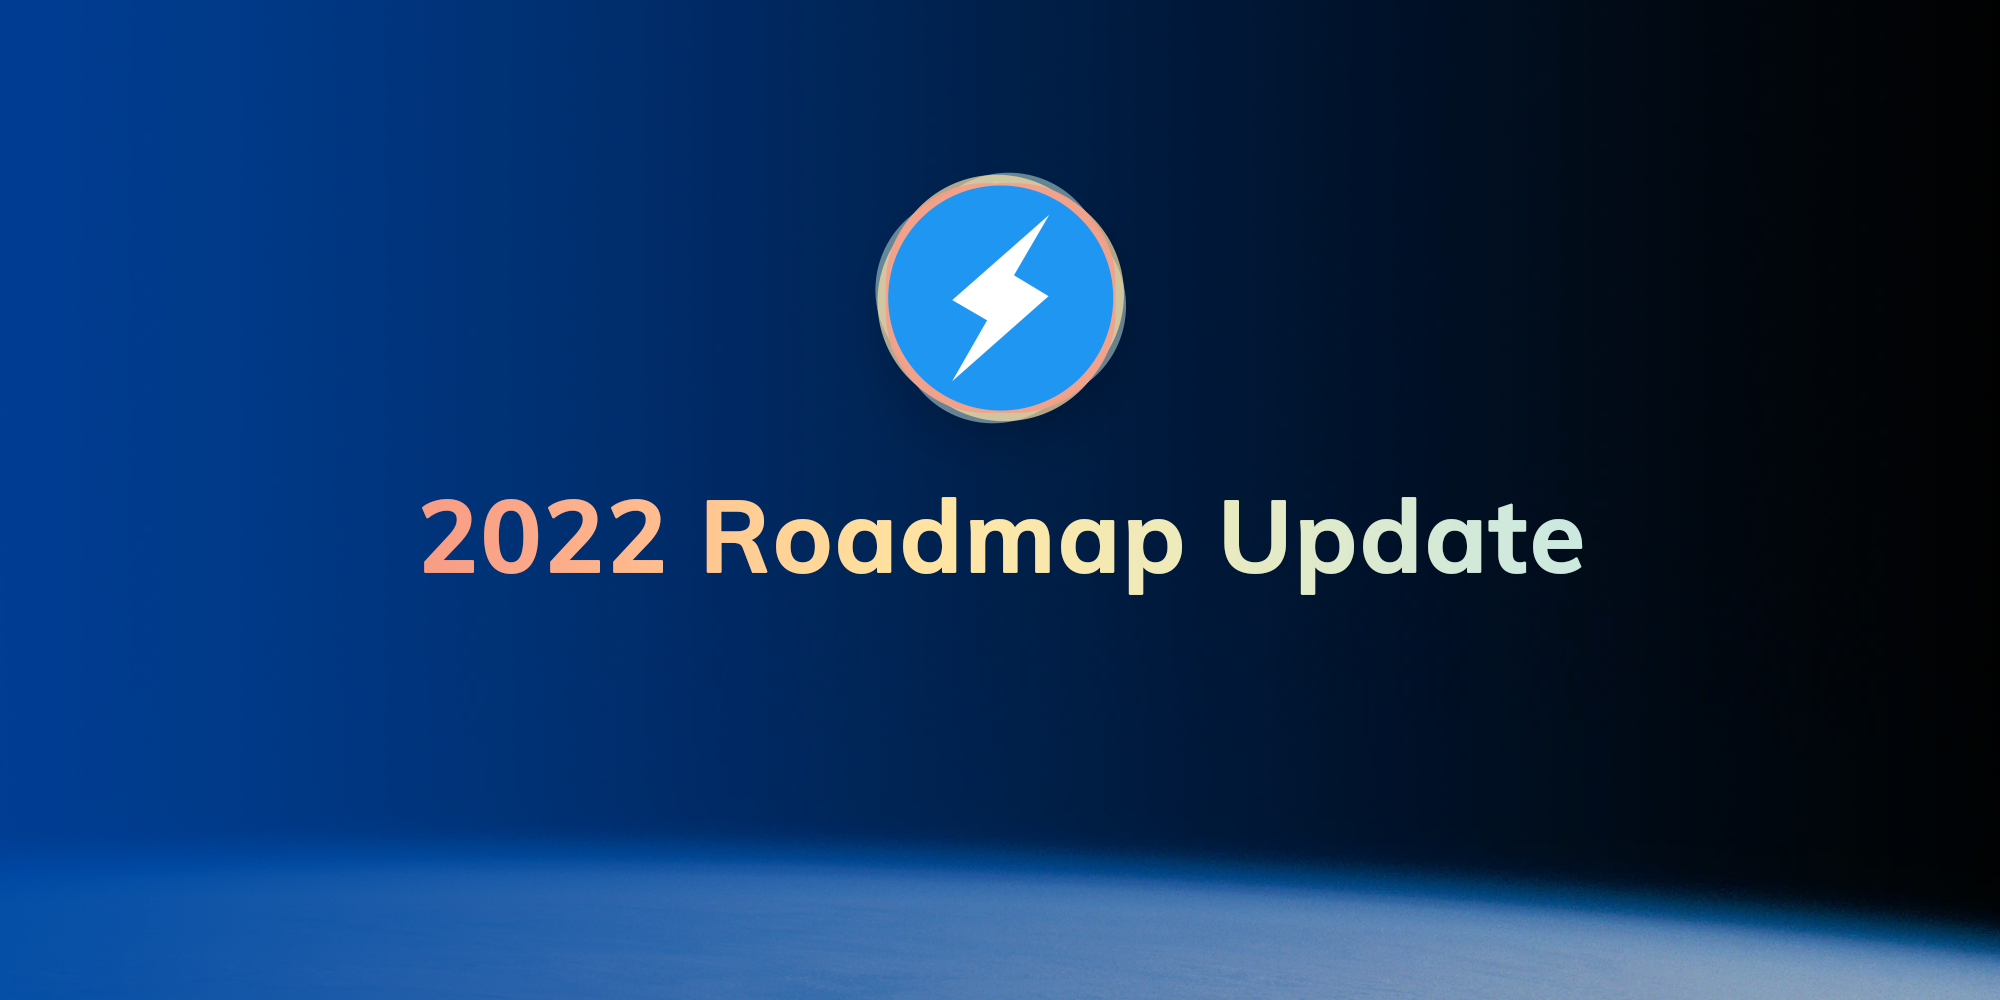 2022 Roadmap Update